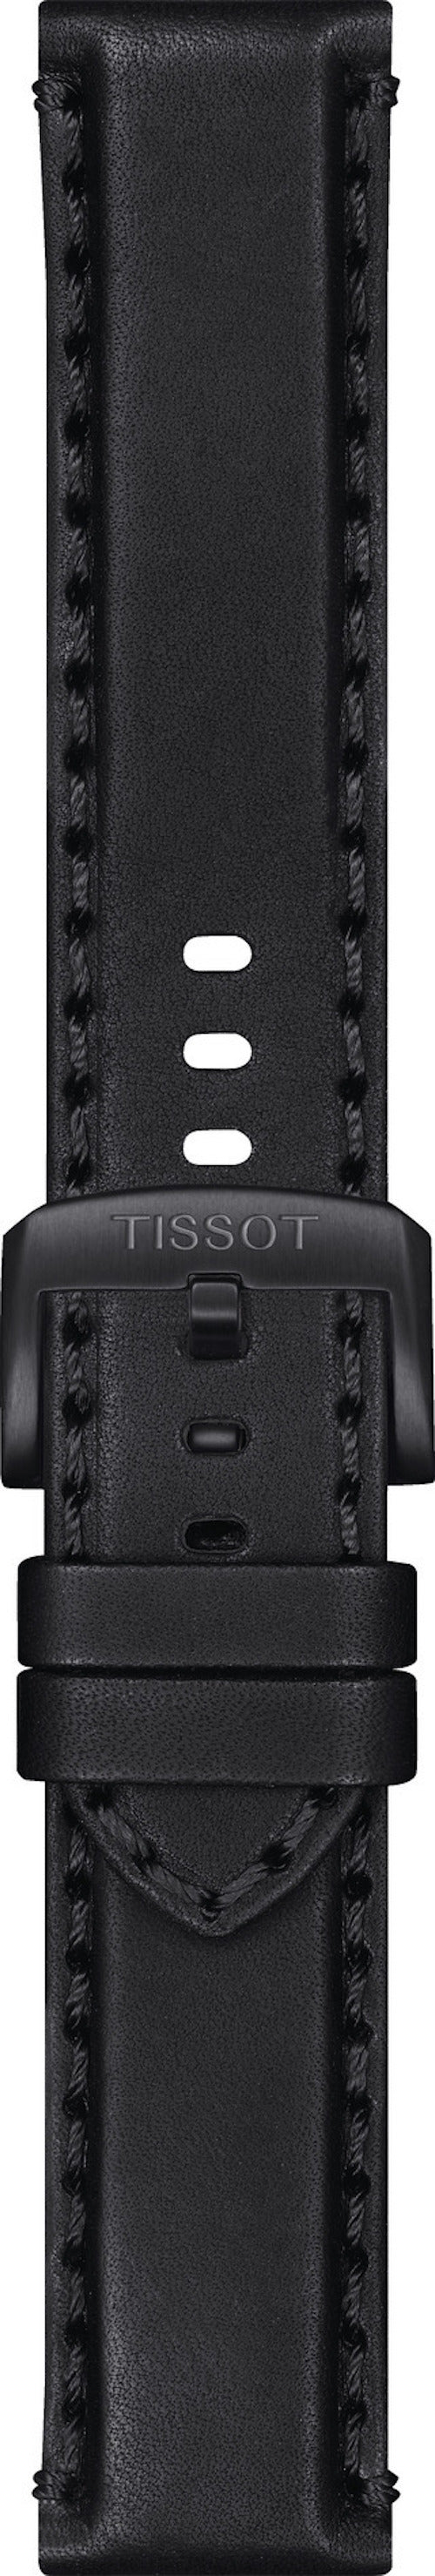 Tissot Super Sport 22mm Black Leather Band Strap - WATCHBAND EXPERT